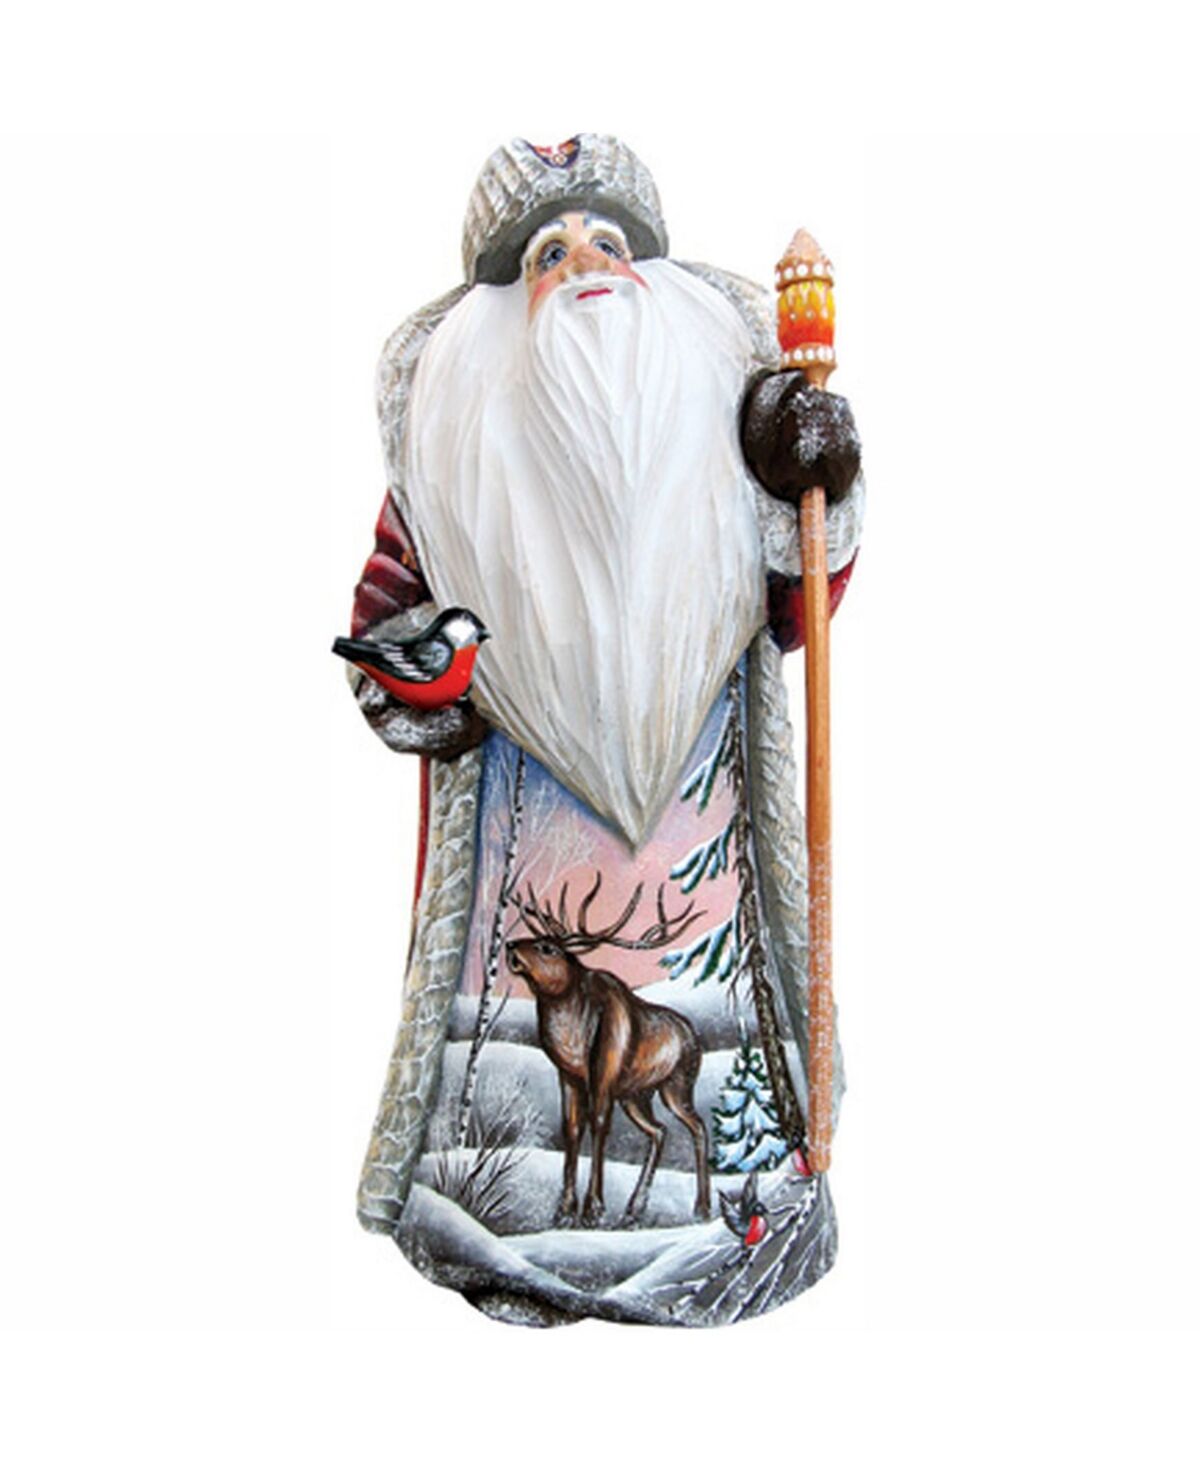 G.DeBrekht Woodcarved Hand Painted Merry Wonder Santa Figurine - Multi